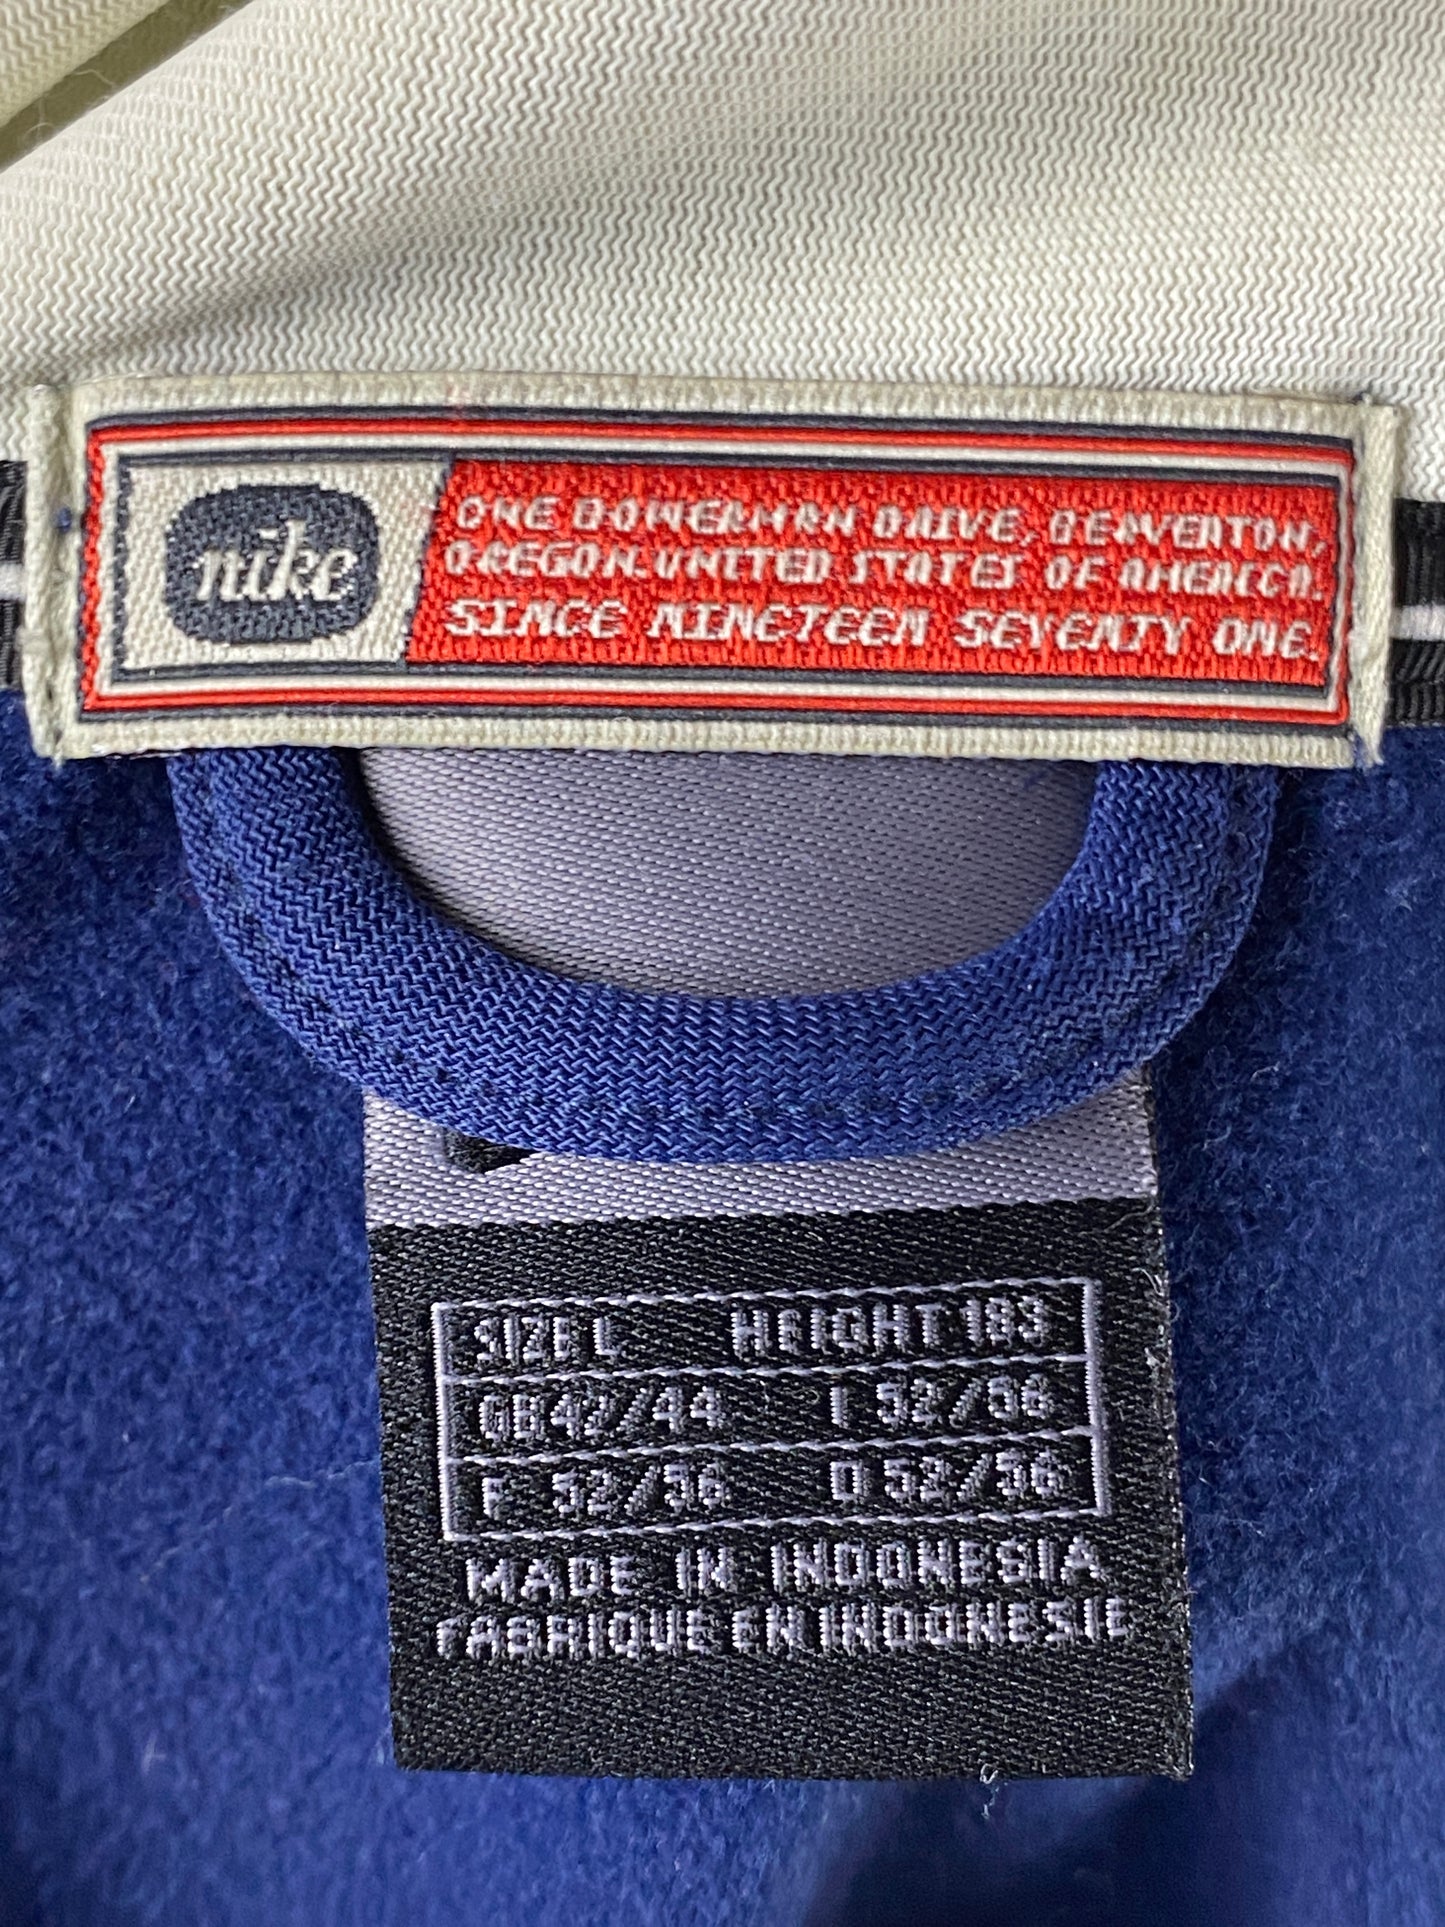 Nike Oregon-USA Vintage Men's Track Jacket - Large Navy Blue Polyester